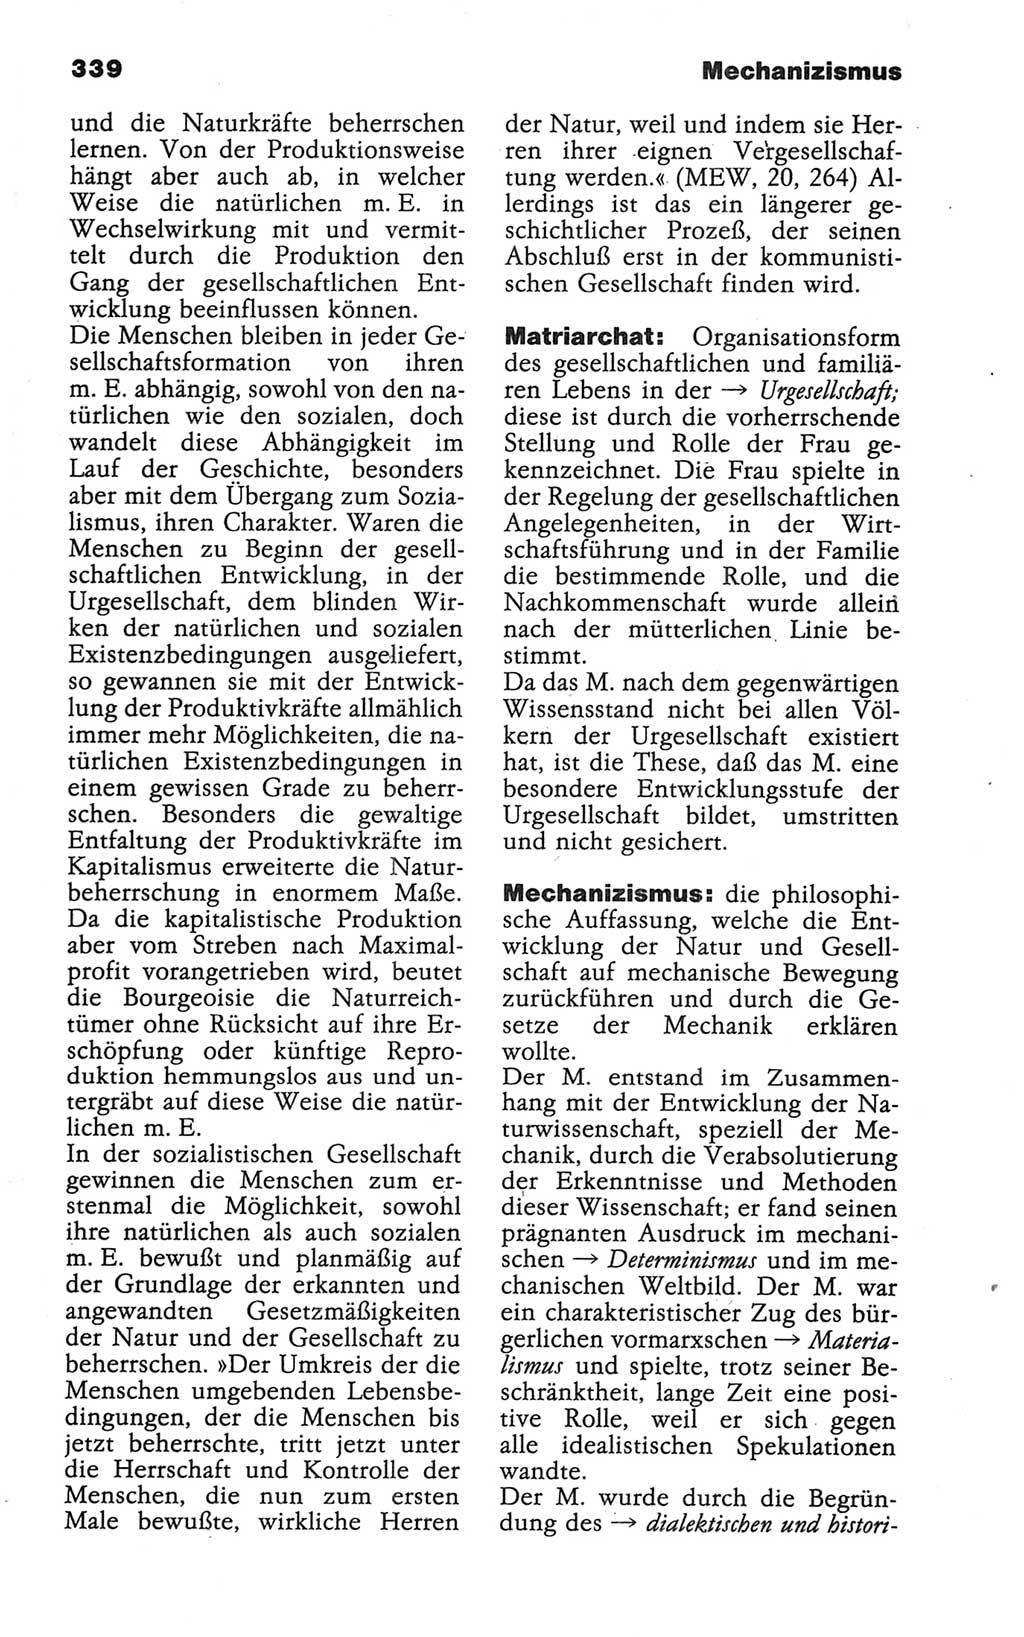 Wörterbuch der marxistisch-leninistischen Philosophie [Deutsche Demokratische Republik (DDR)] 1986, Seite 339 (Wb. ML Phil. DDR 1986, S. 339)